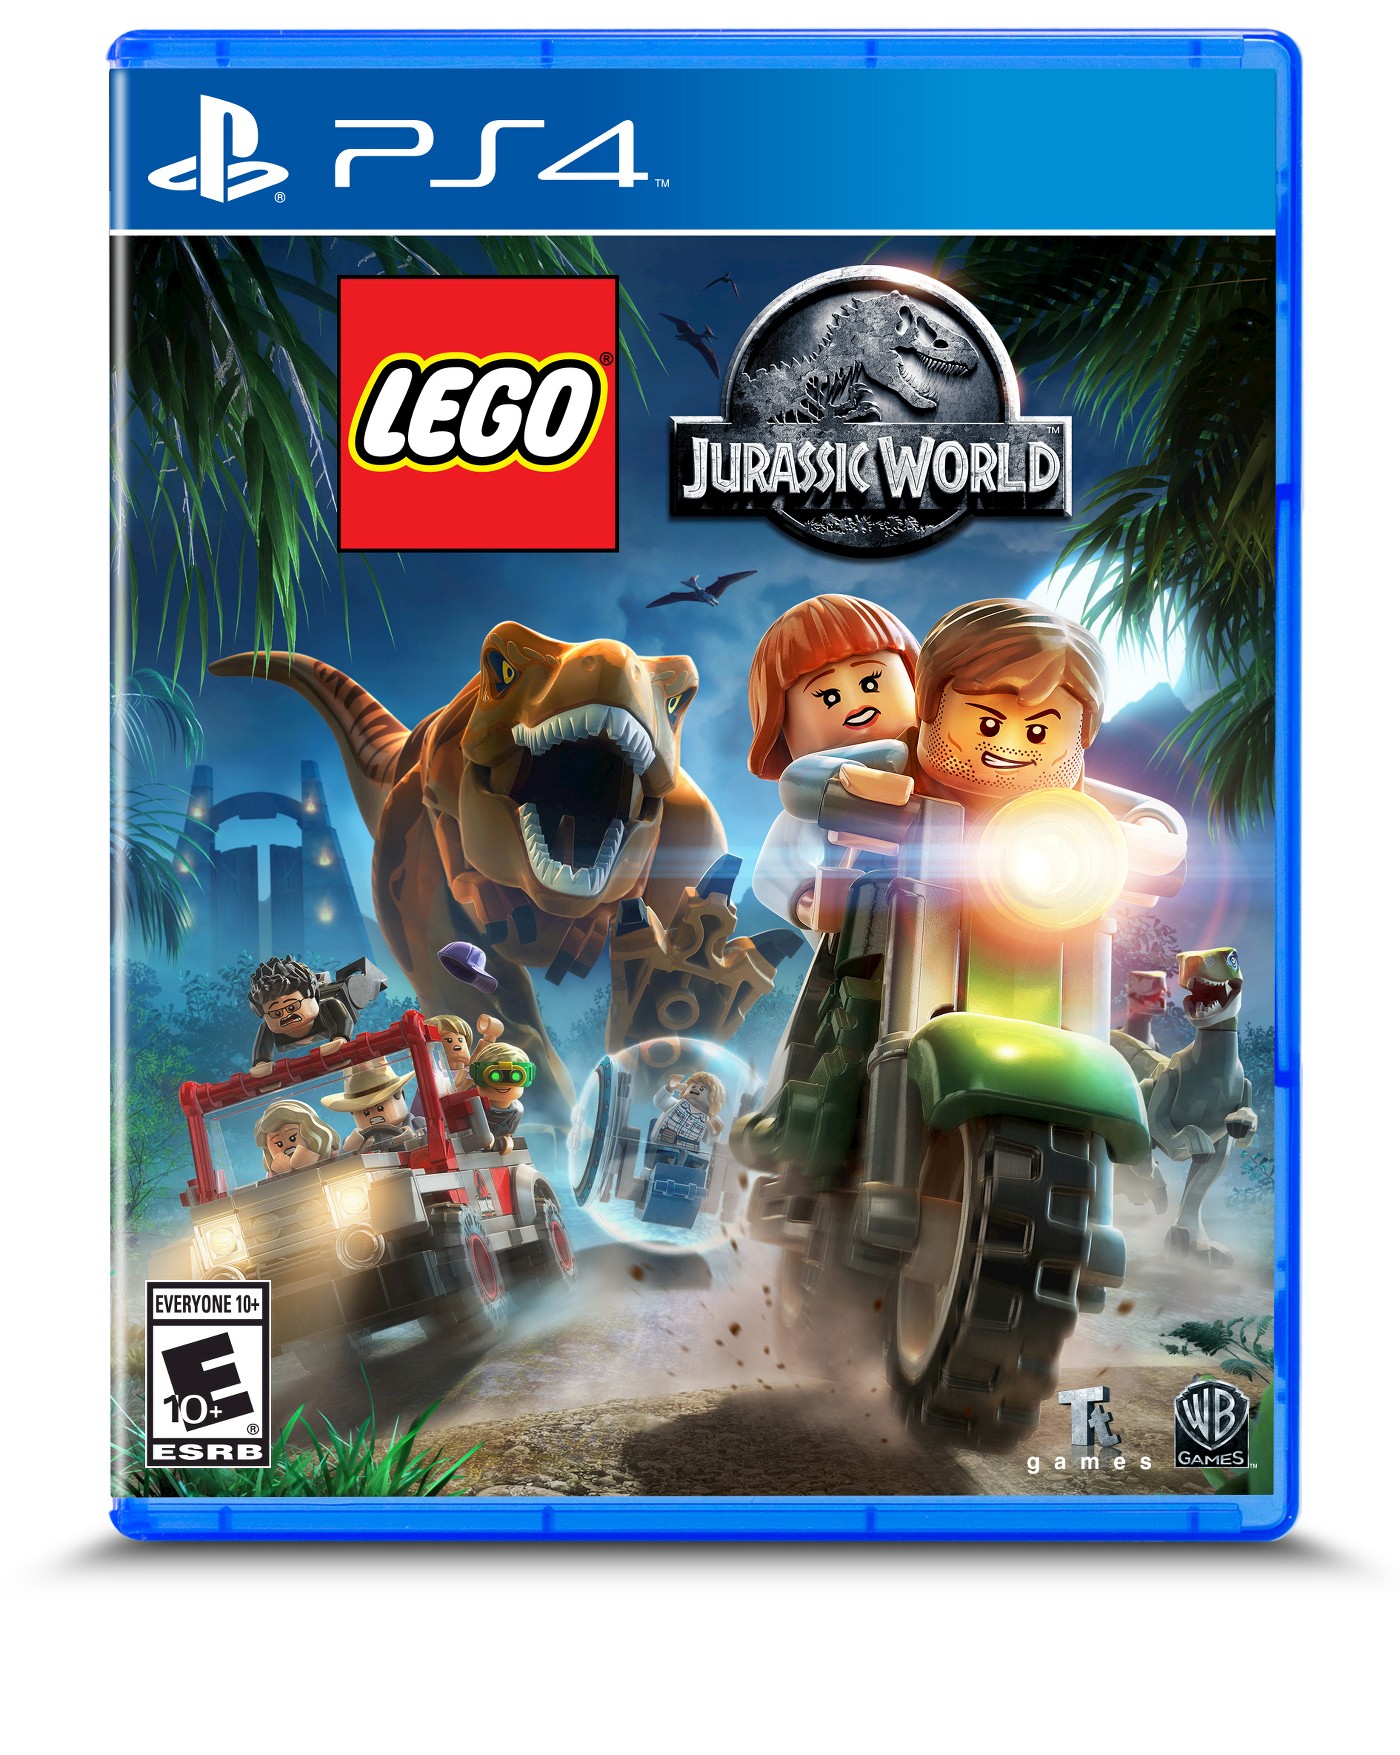 LEGO Jurassic World - PlayStation 4 - image 1 of 1